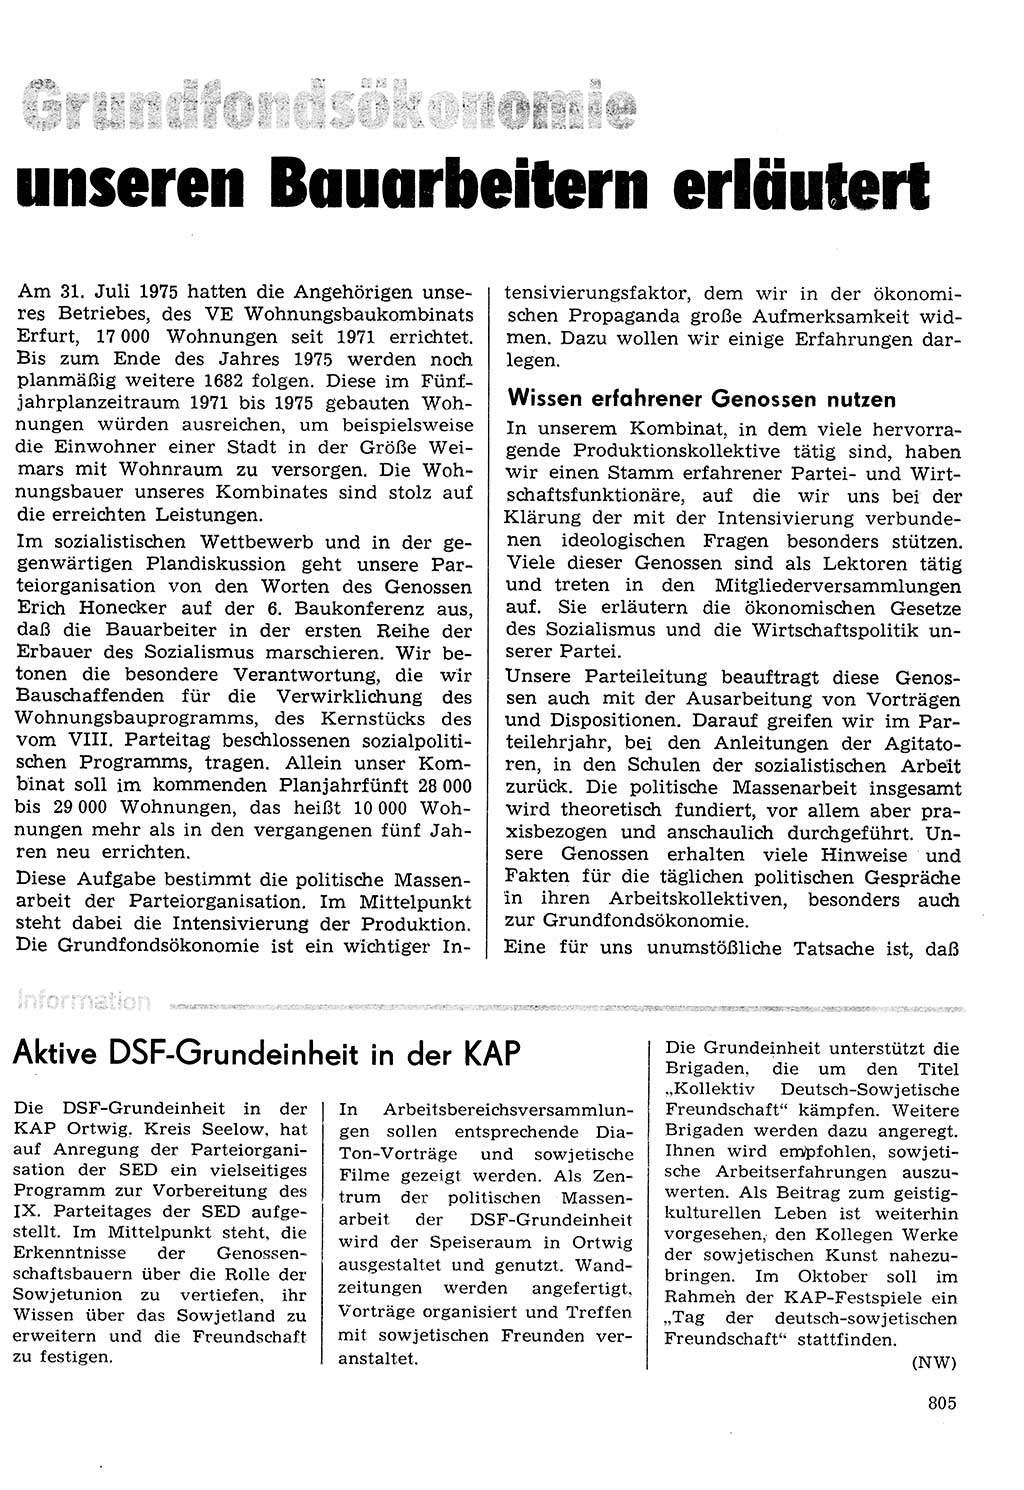 Neuer Weg (NW), Organ des Zentralkomitees (ZK) der SED (Sozialistische Einheitspartei Deutschlands) für Fragen des Parteilebens, 30. Jahrgang [Deutsche Demokratische Republik (DDR)] 1975, Seite 805 (NW ZK SED DDR 1975, S. 805)